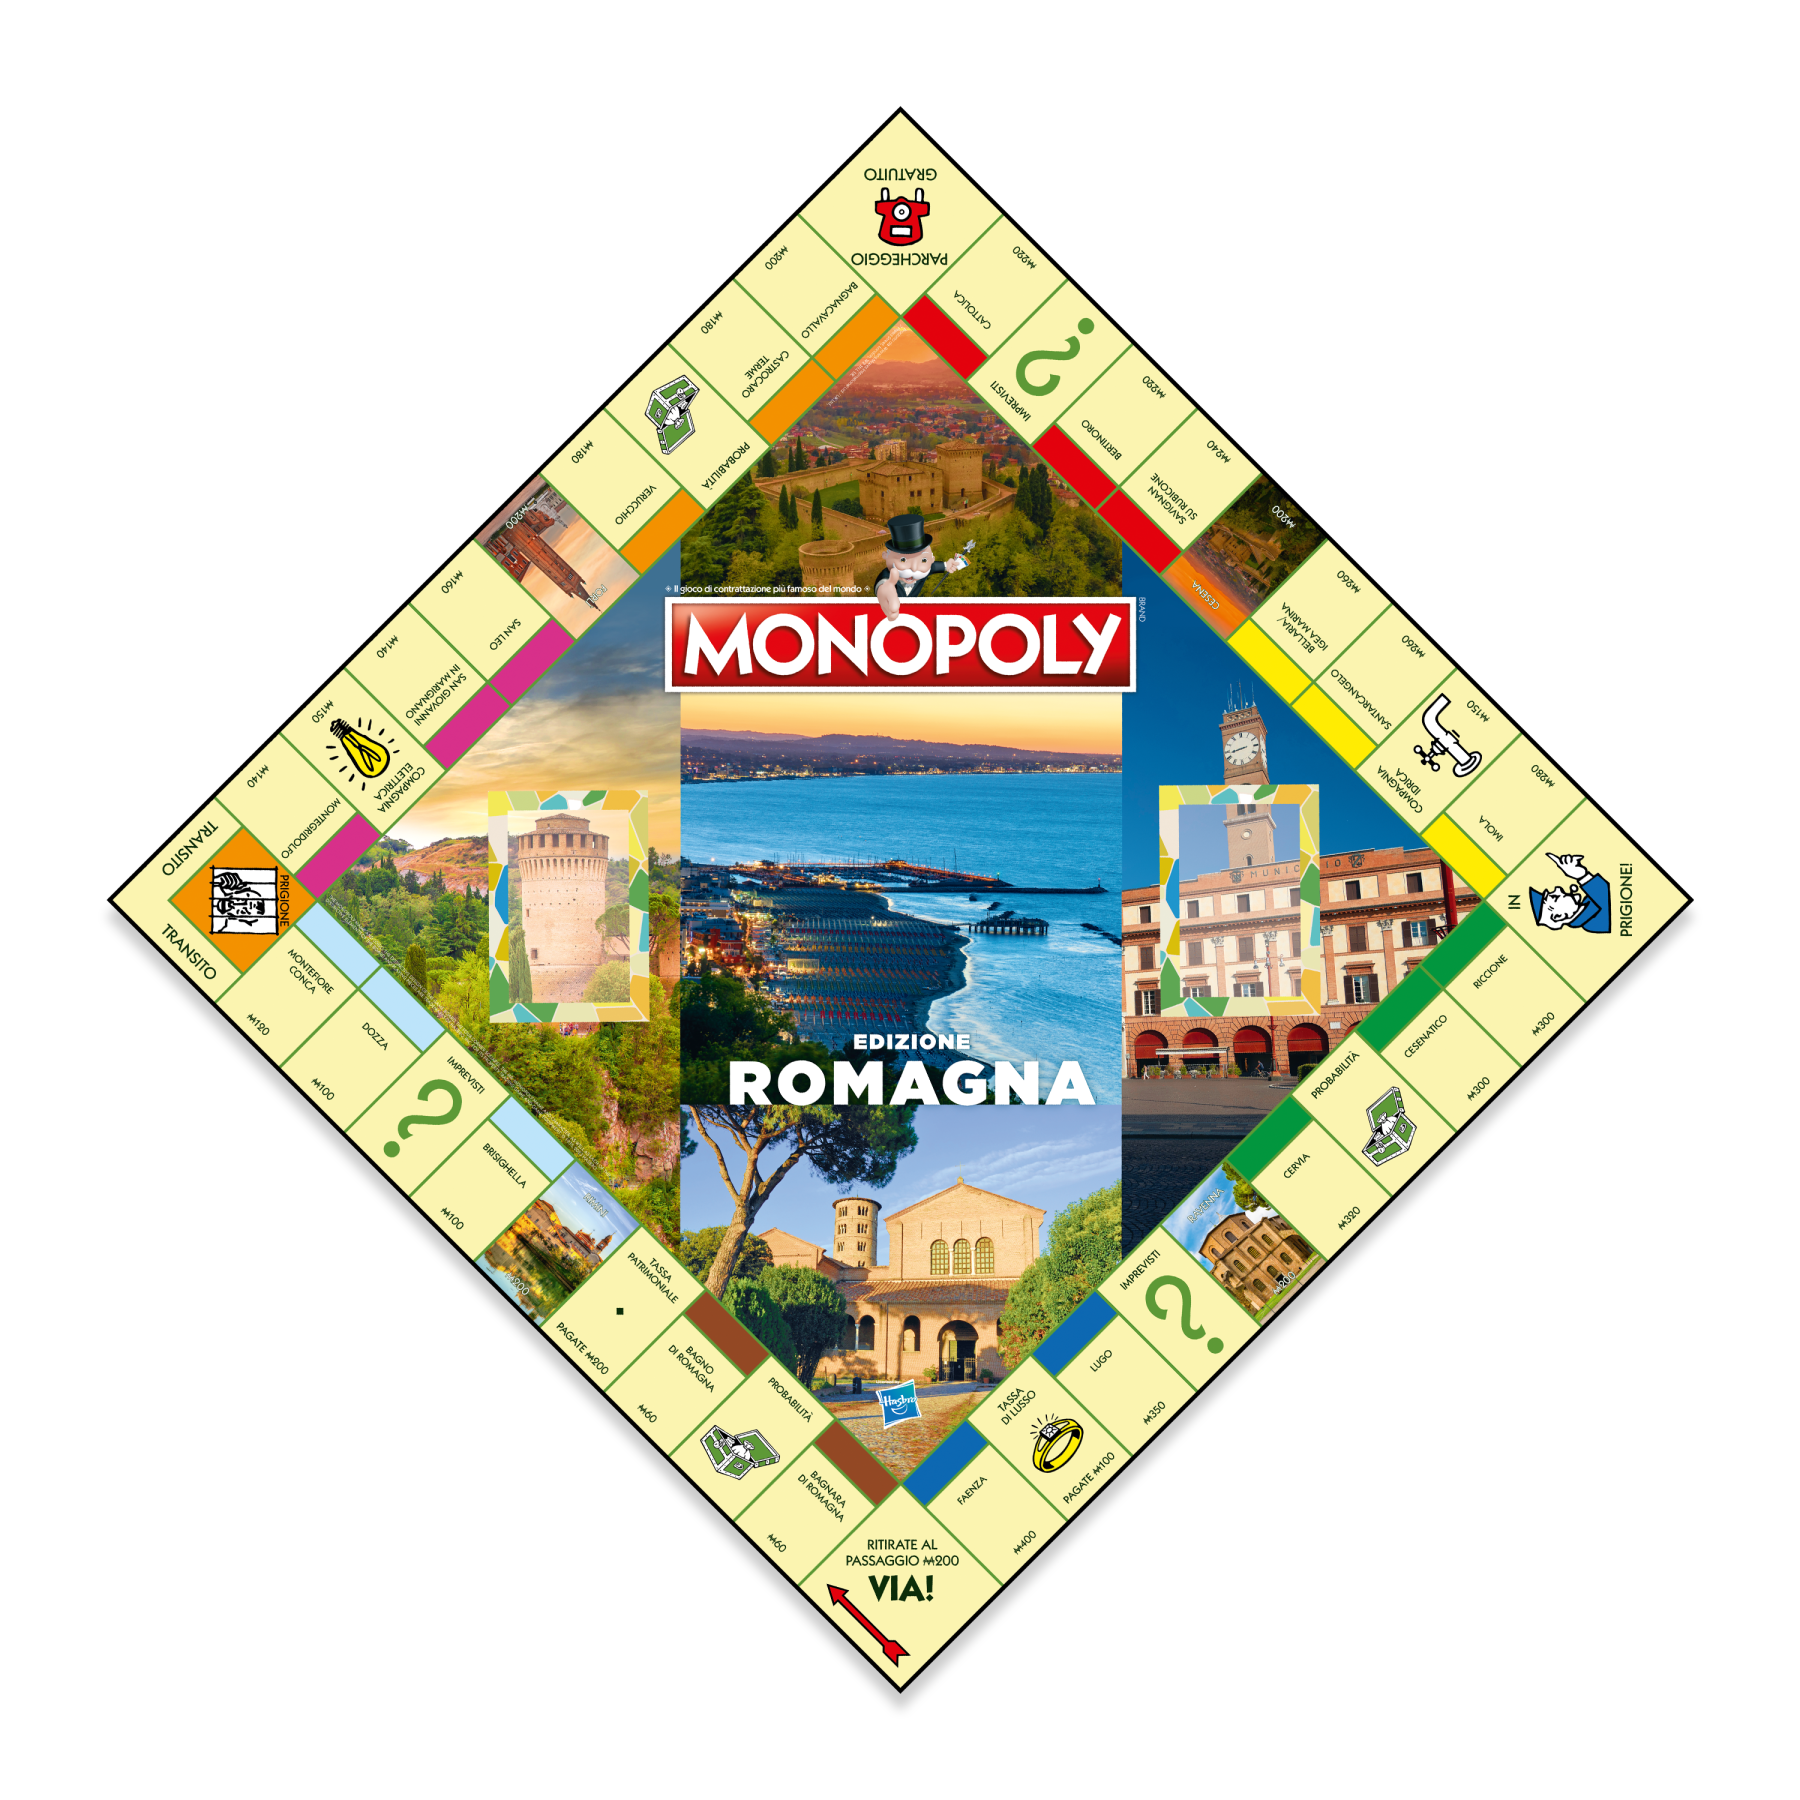 Winning moves - monopoly - i borghi più belli d'italia - romagna - MONOPOLY